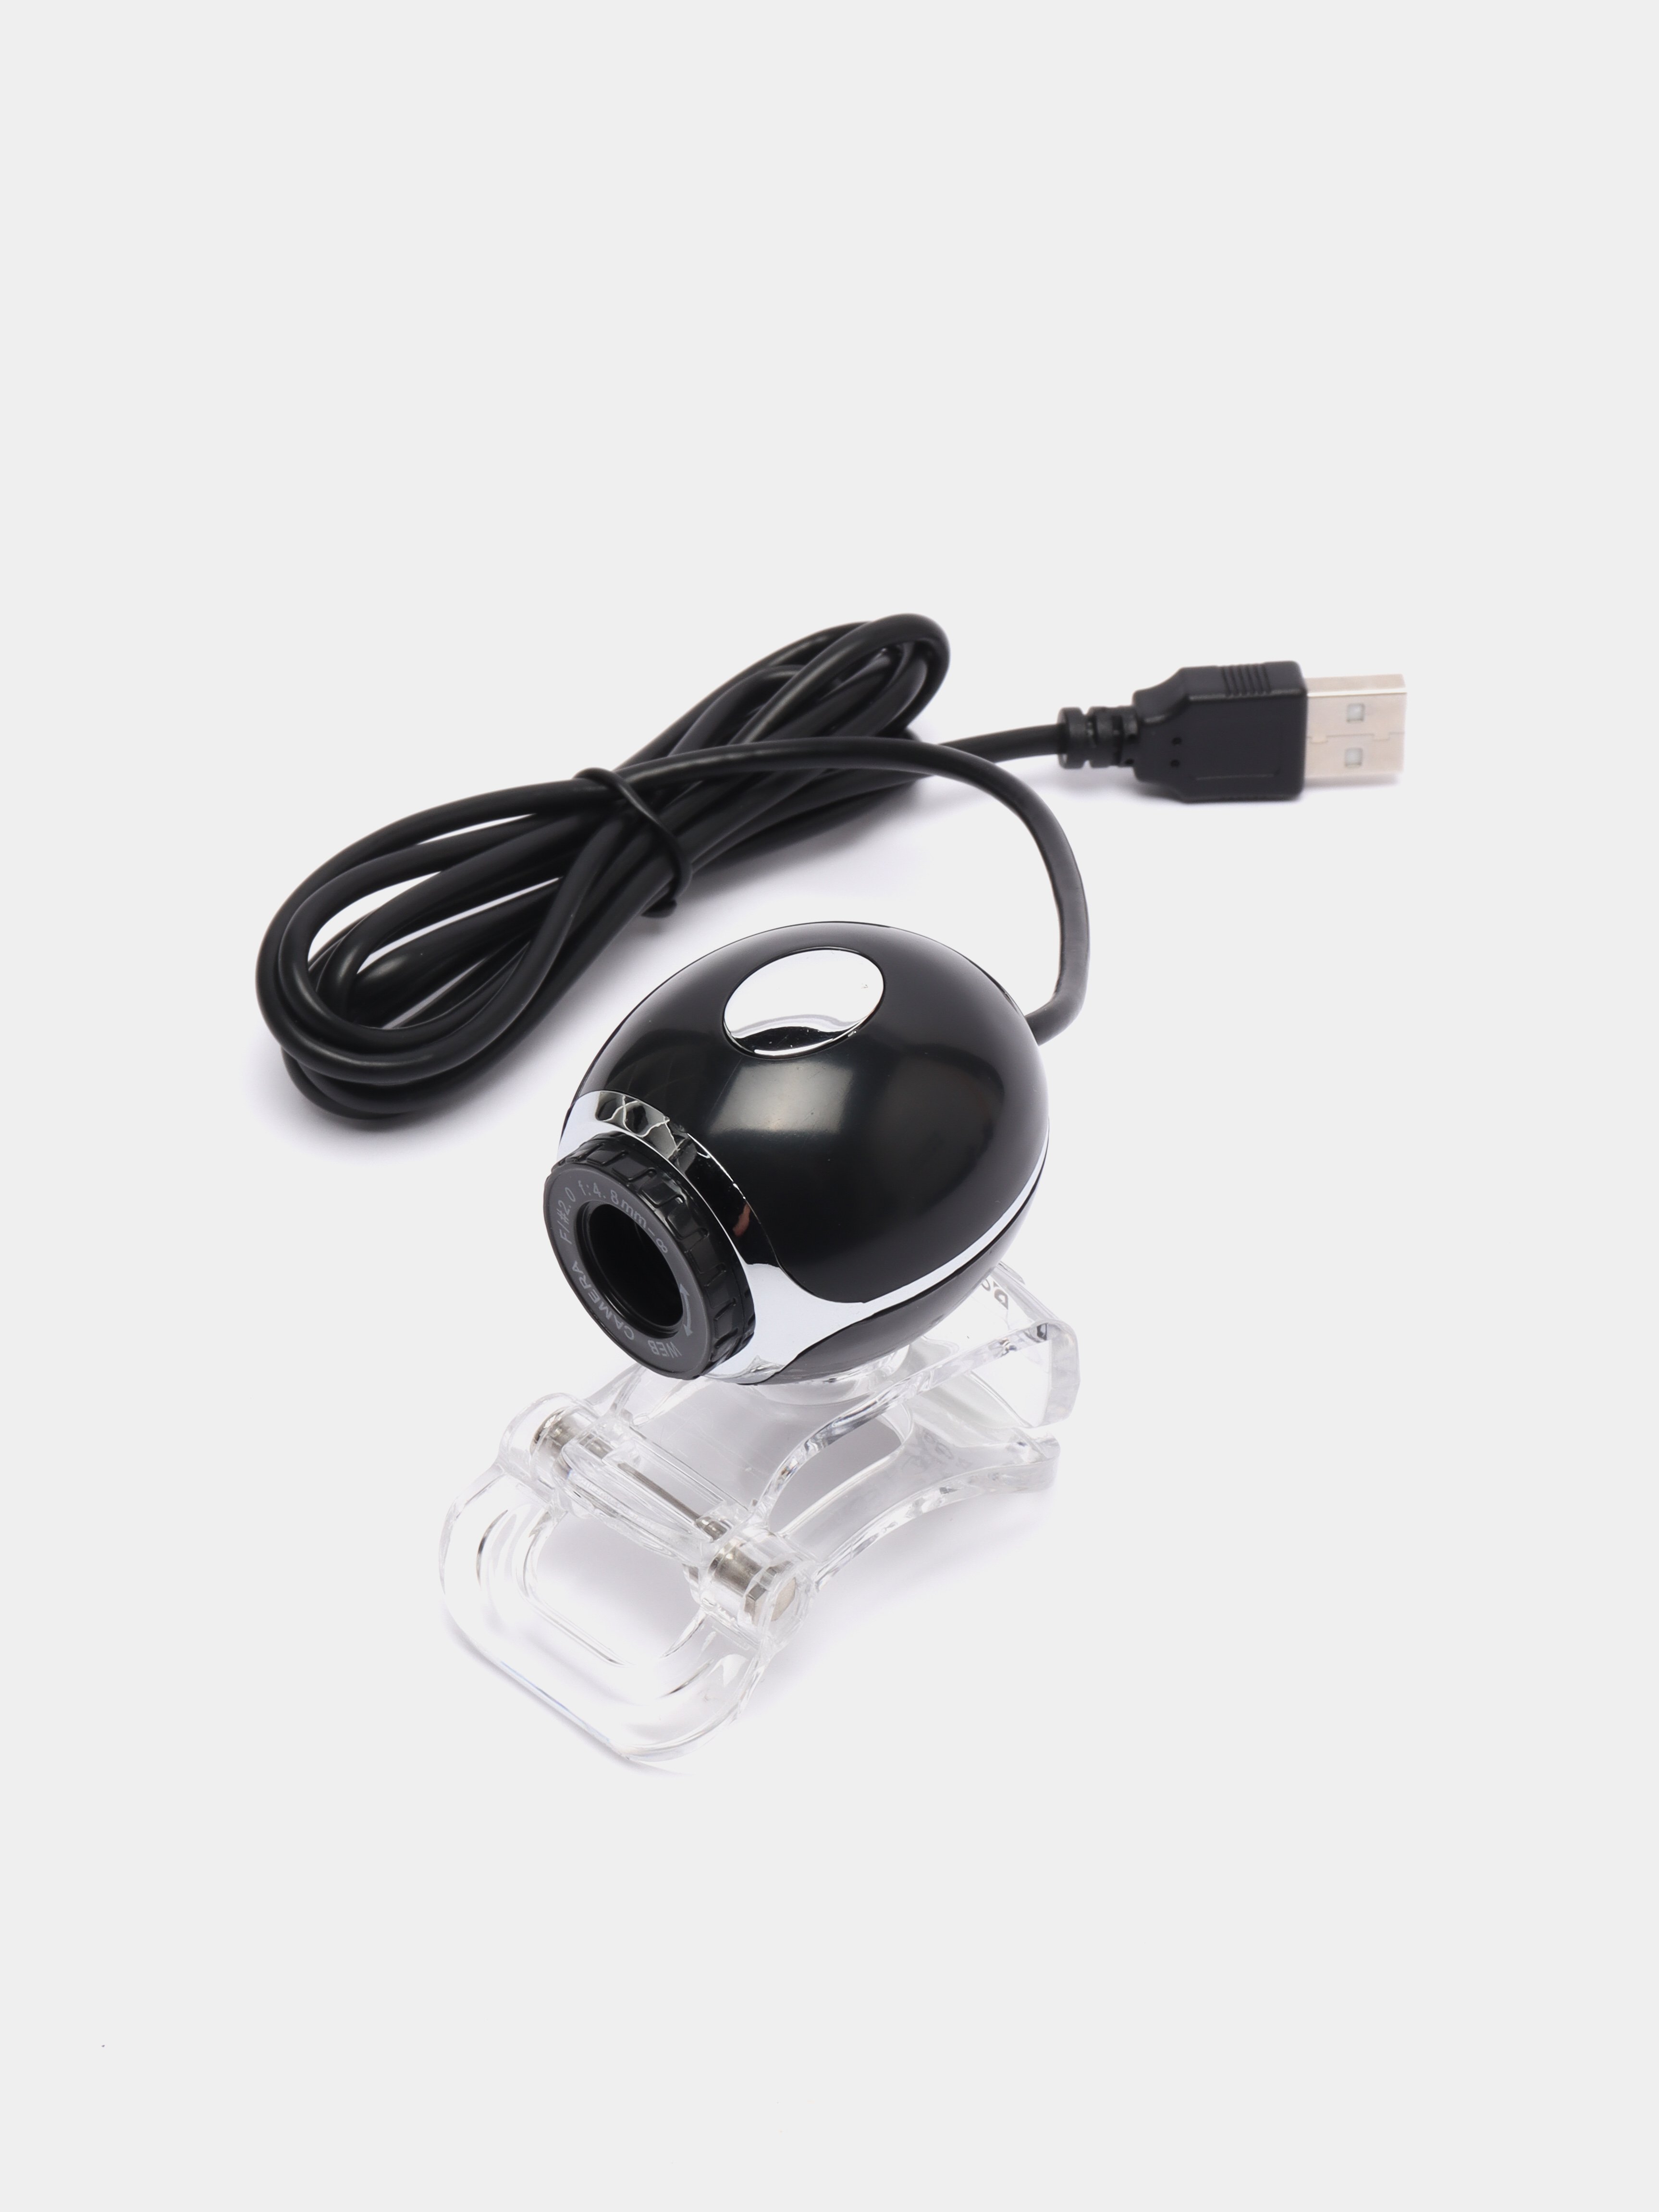 Defender c 090. Веб-камера Defender c-090 микрофон 0,3мп черная.